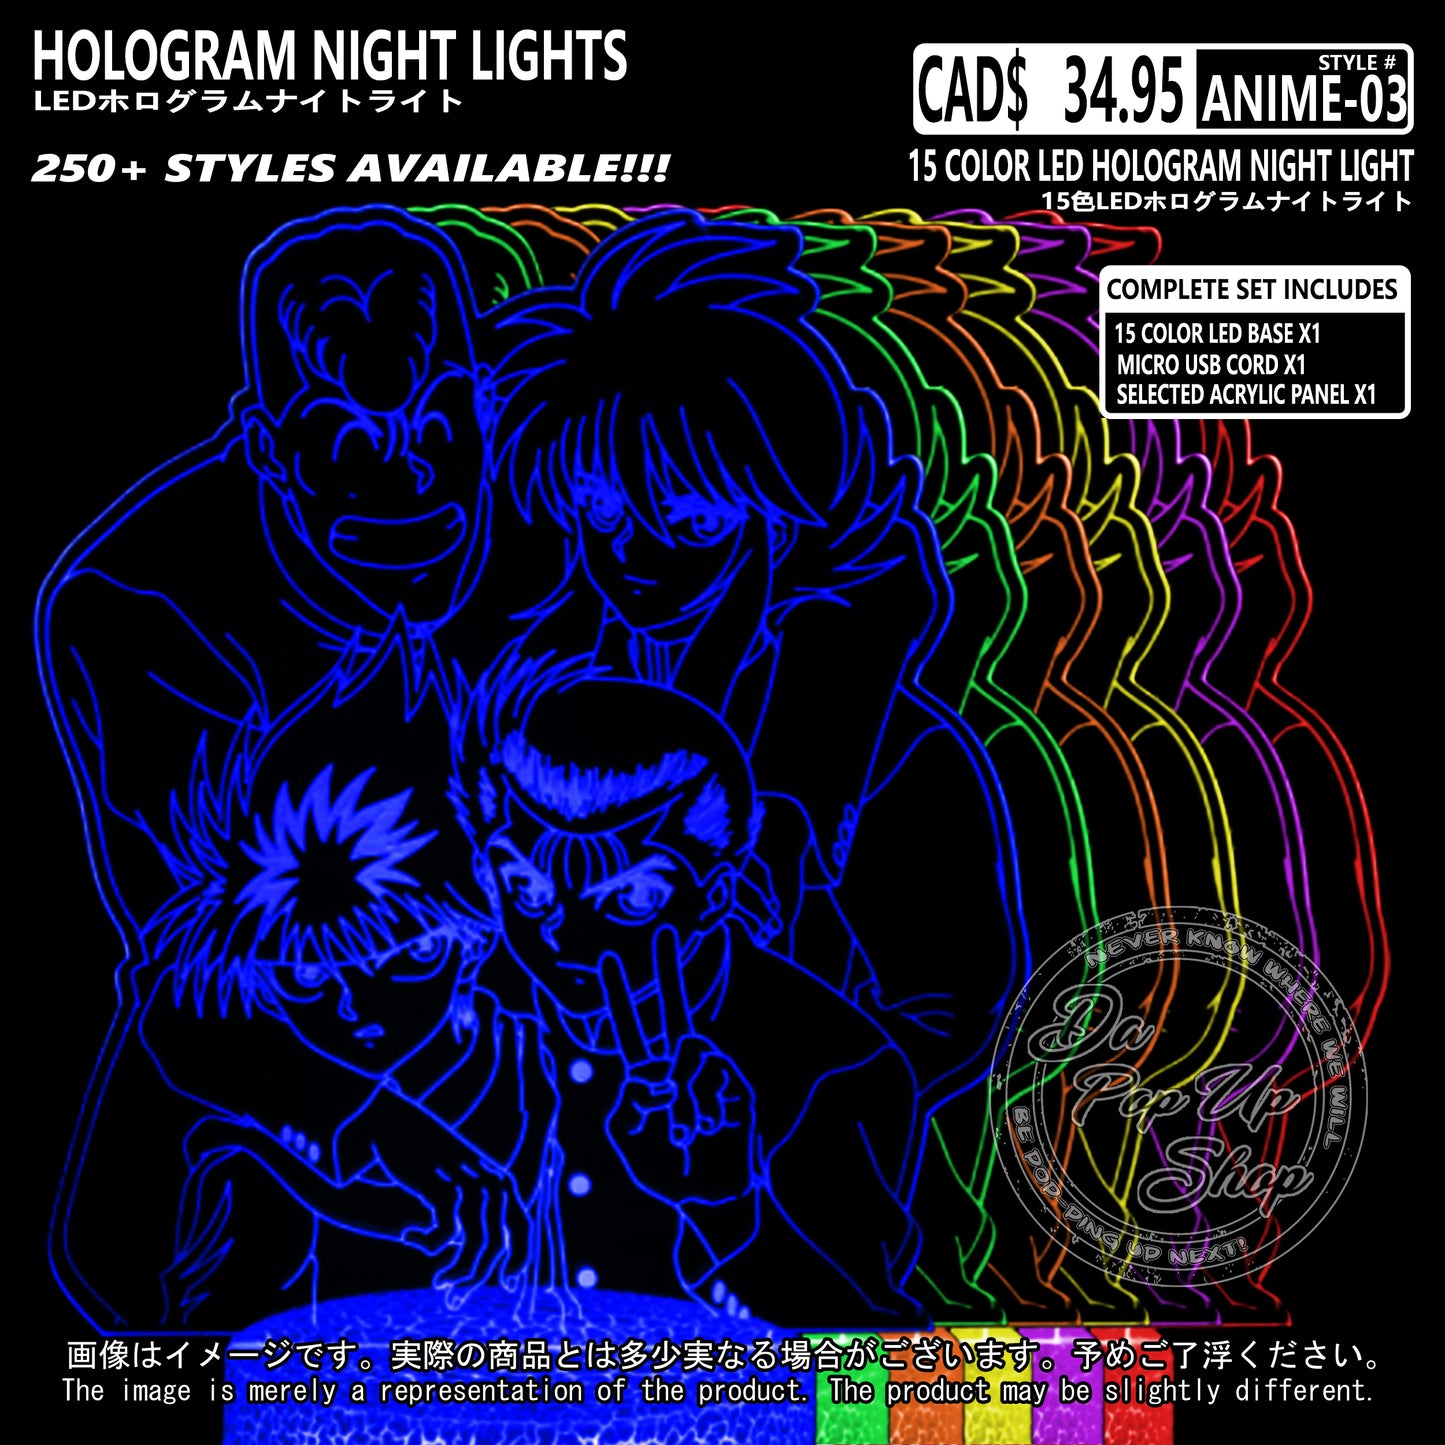 (ANIME-03) YuYu Hakusho Hologram LED Night Light